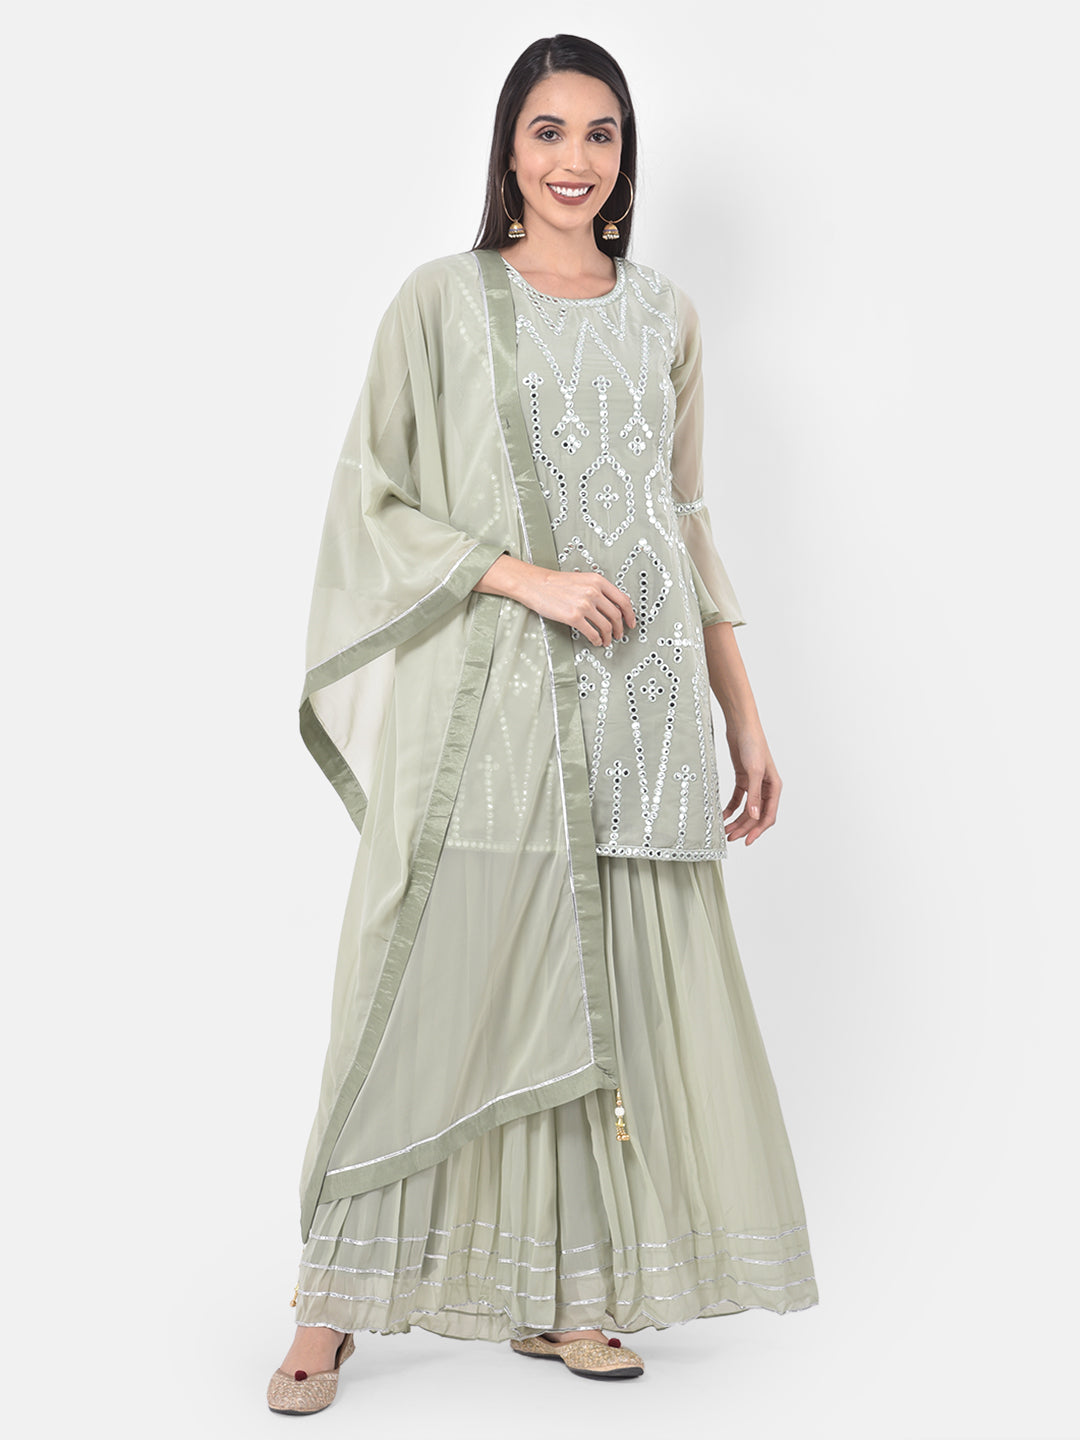 Neeru'S Green Color Georgette Fabric Suit-Gharara